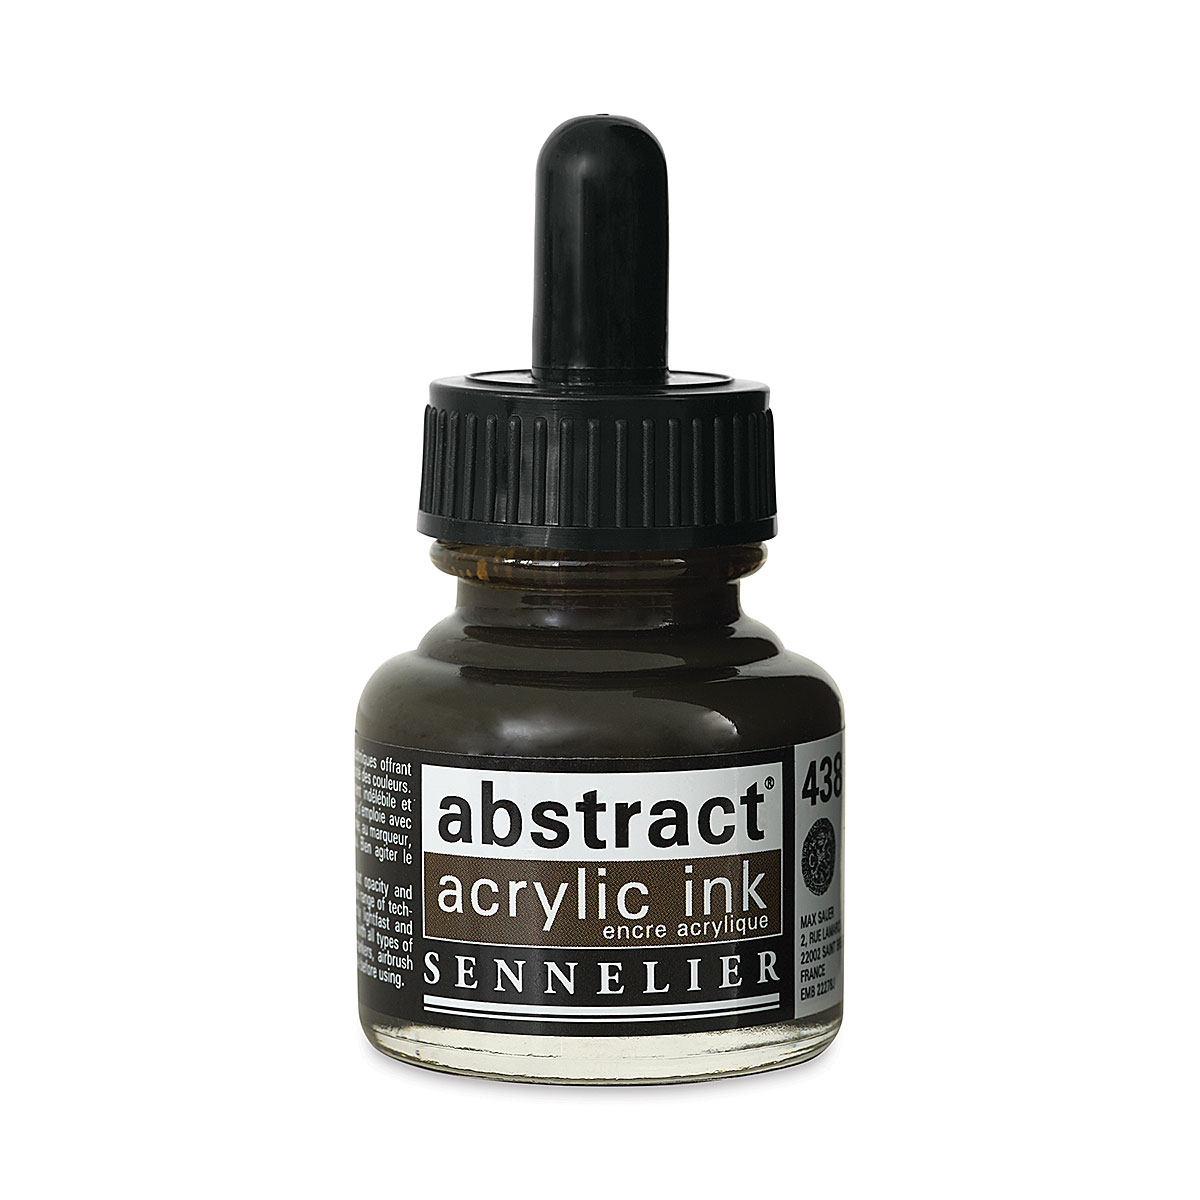 Encre acrylique Abstract - Sennelier - Creastore